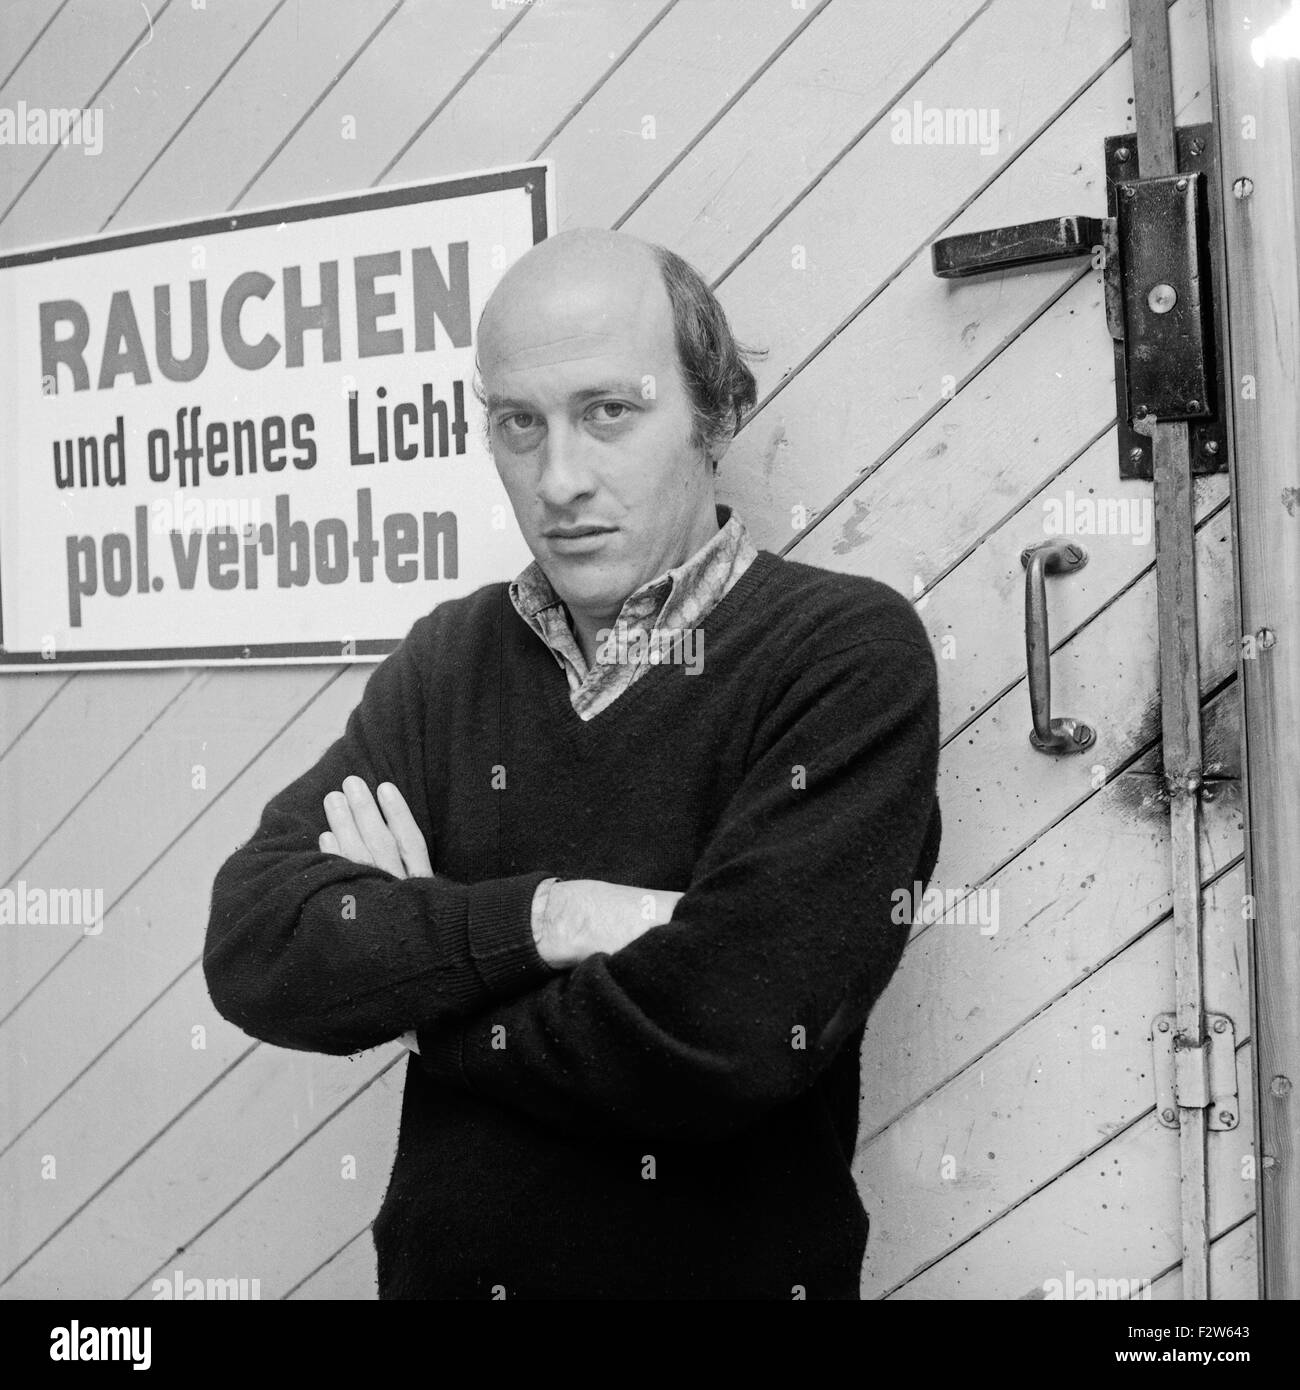 Der amerikanische Produzent, direttore cinematografico und Autor Richard Lester in Amburgo, Deutschland 1960er Jahre. Produttore americano, direttore e autore Richard Lester a Amburgo, Germania 1960s. Foto Stock